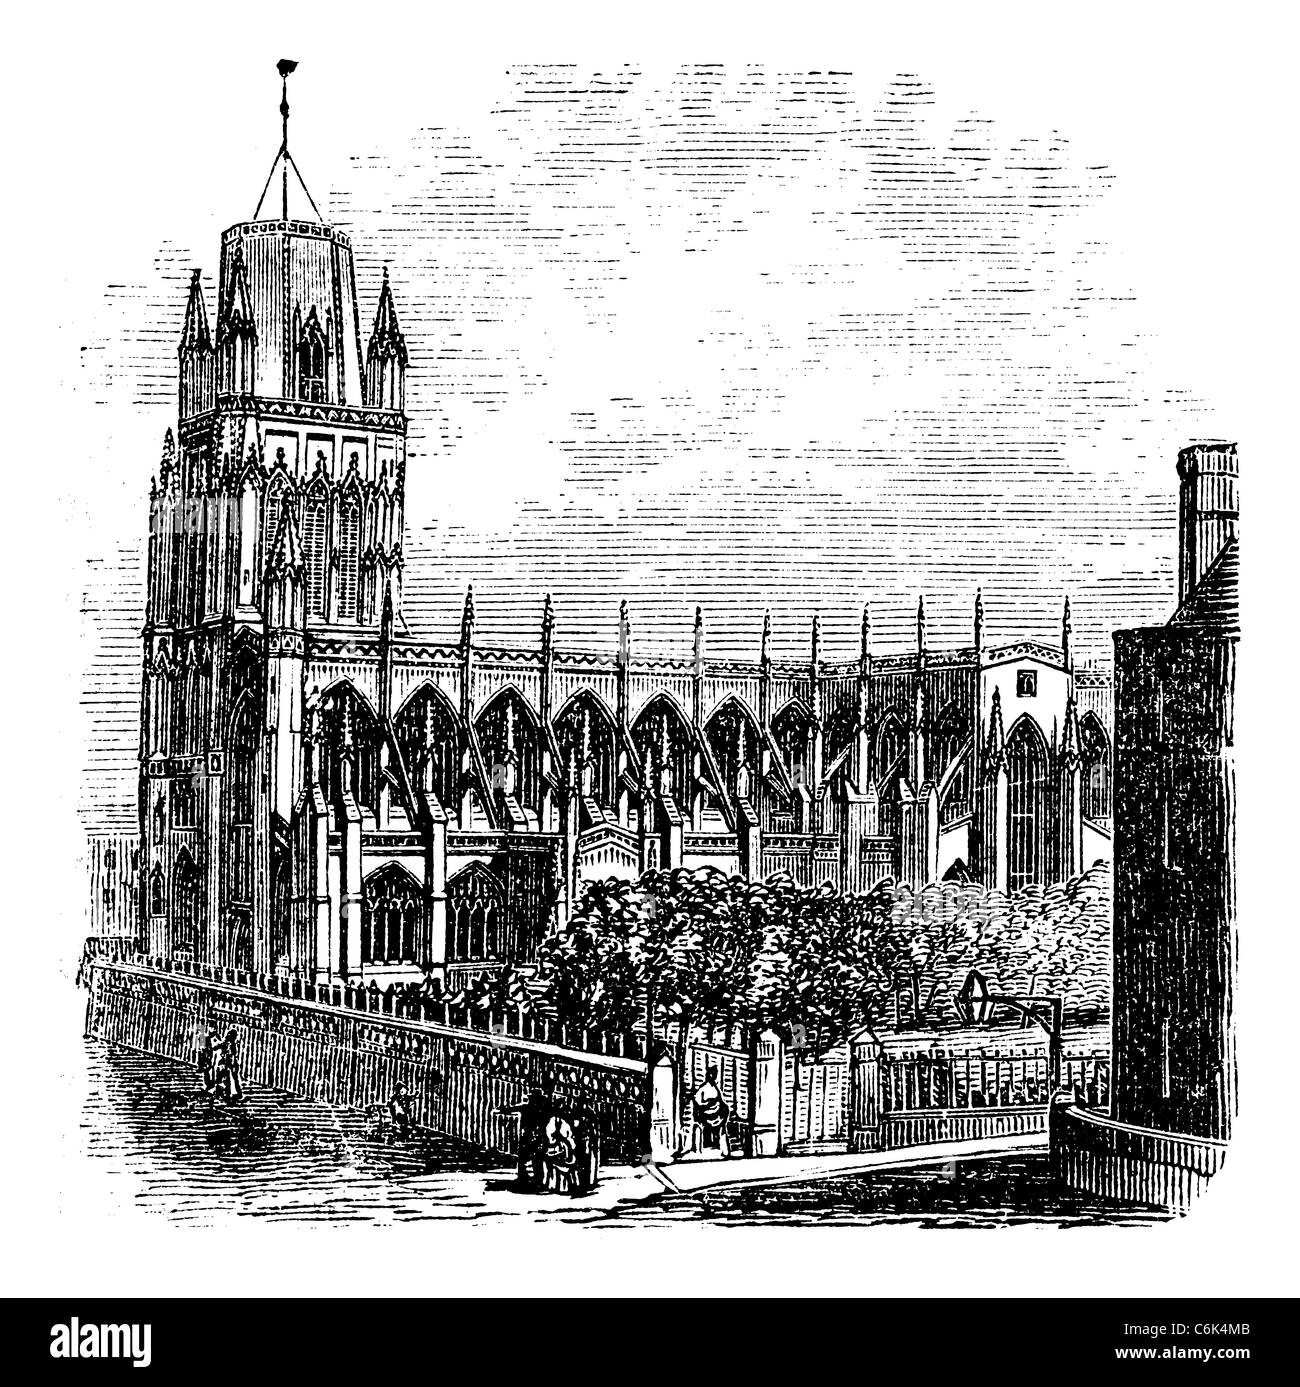 Saint Mary Redcliffe - anglikanische Kirche in Bristol, England (Vereinigtes Königreich). Jahrgang Gravur aus den 1890er Jahren. Stockfoto